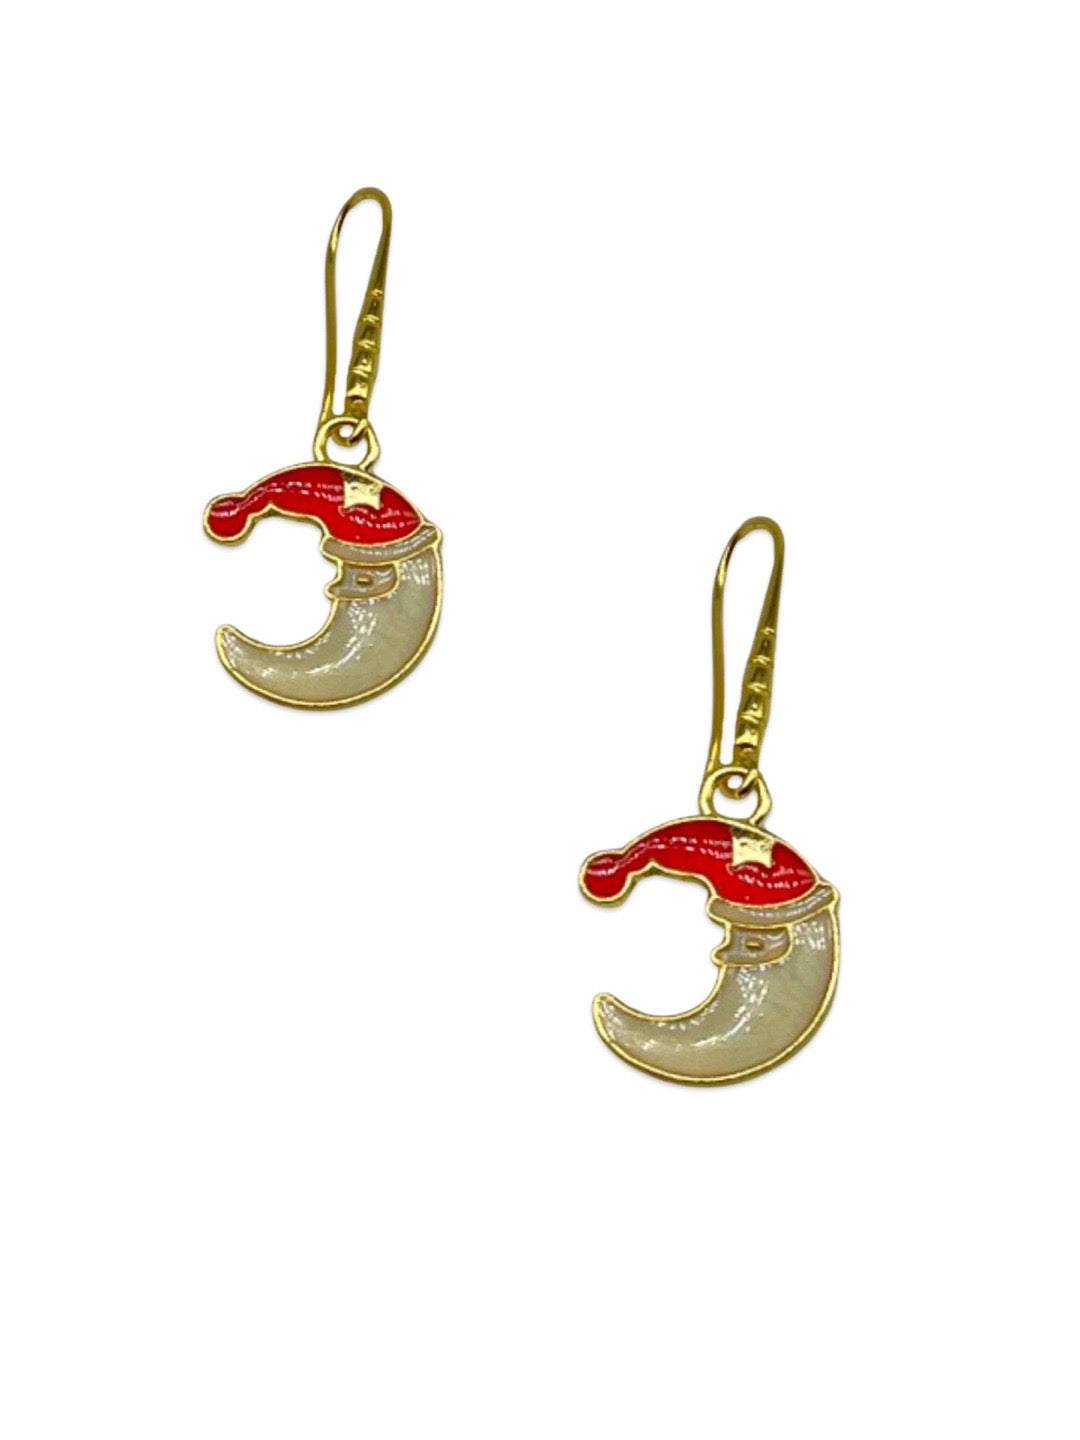 Santa Claus Moon Charm Necklace Set